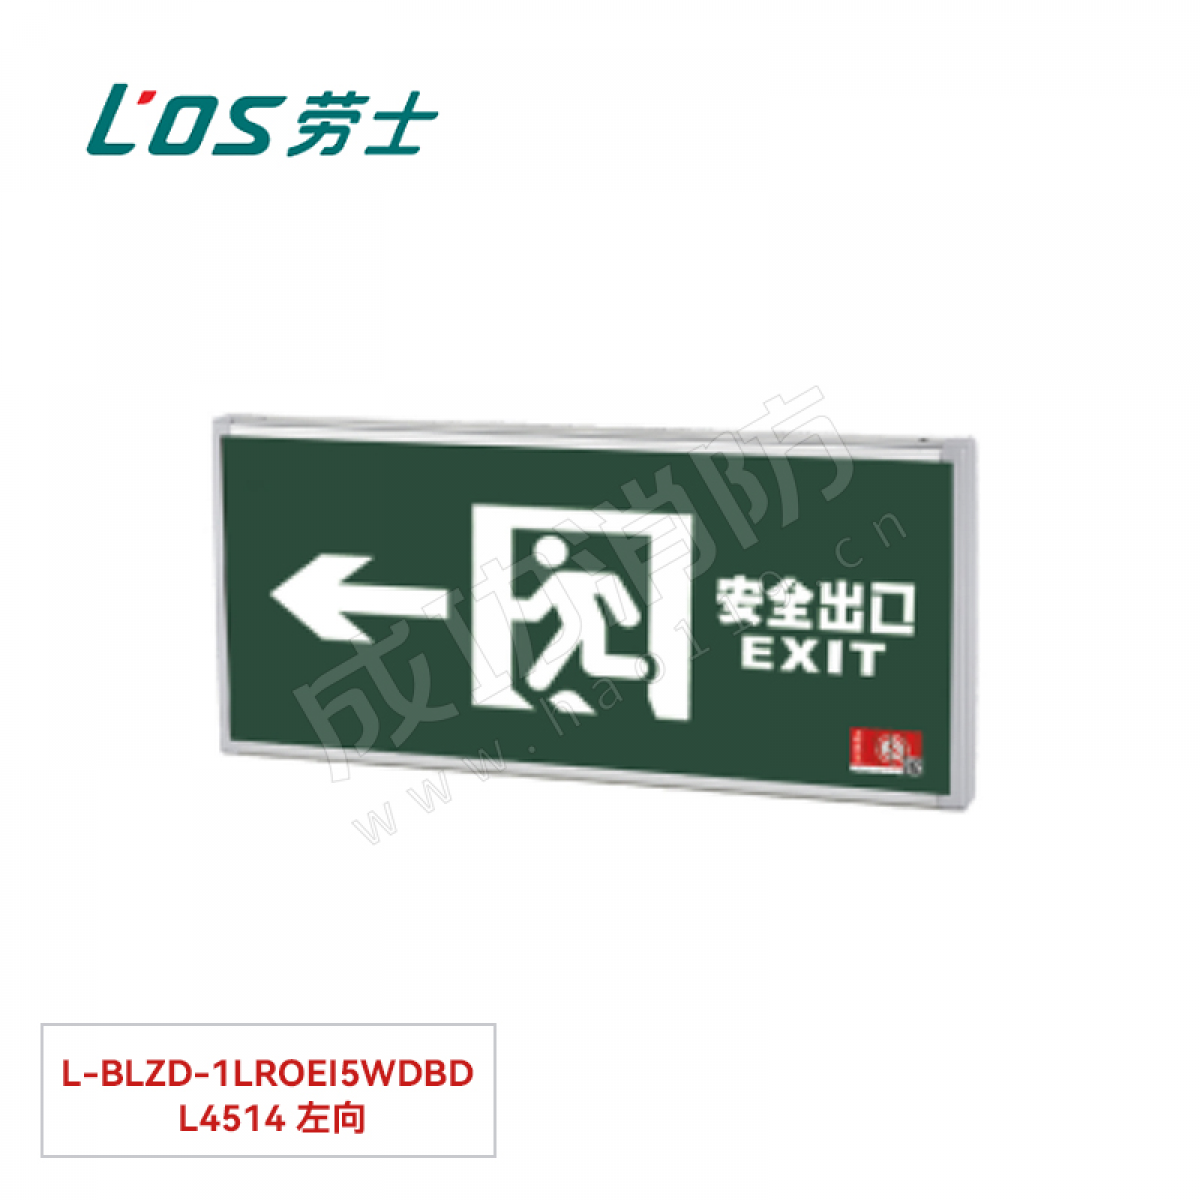 劳士 消防应急标志灯(壁挂安装) L-BLZD-1LROEⅠ5WDBD L4514 左向